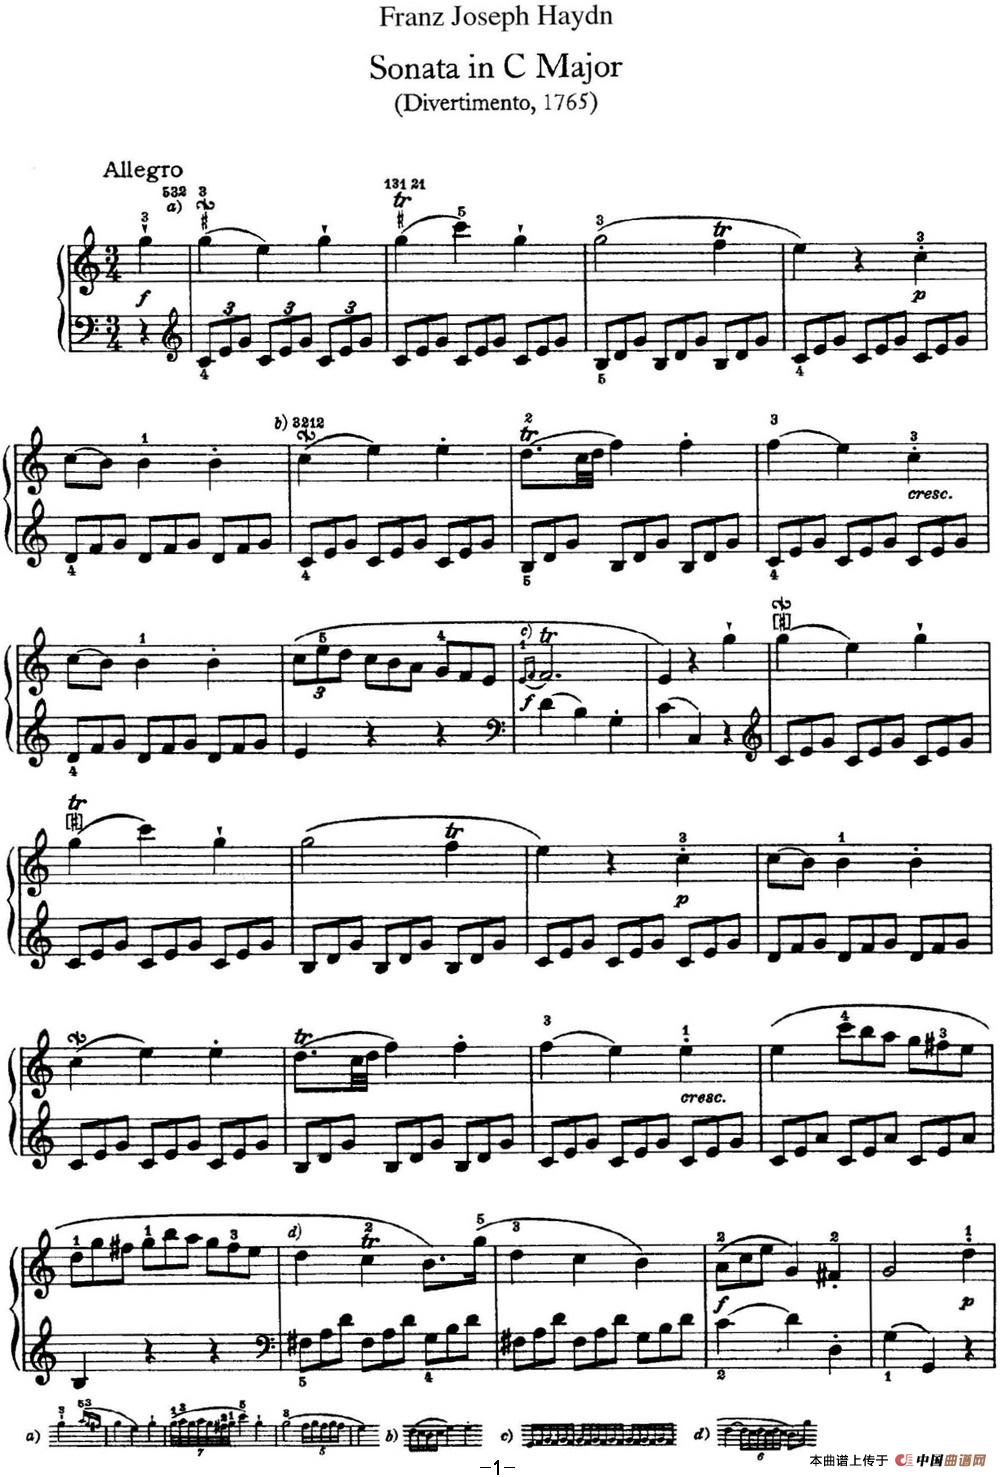 《海顿 钢琴奏鸣曲 Hob XVI 3 Divertimento C major》钢琴曲谱图分享